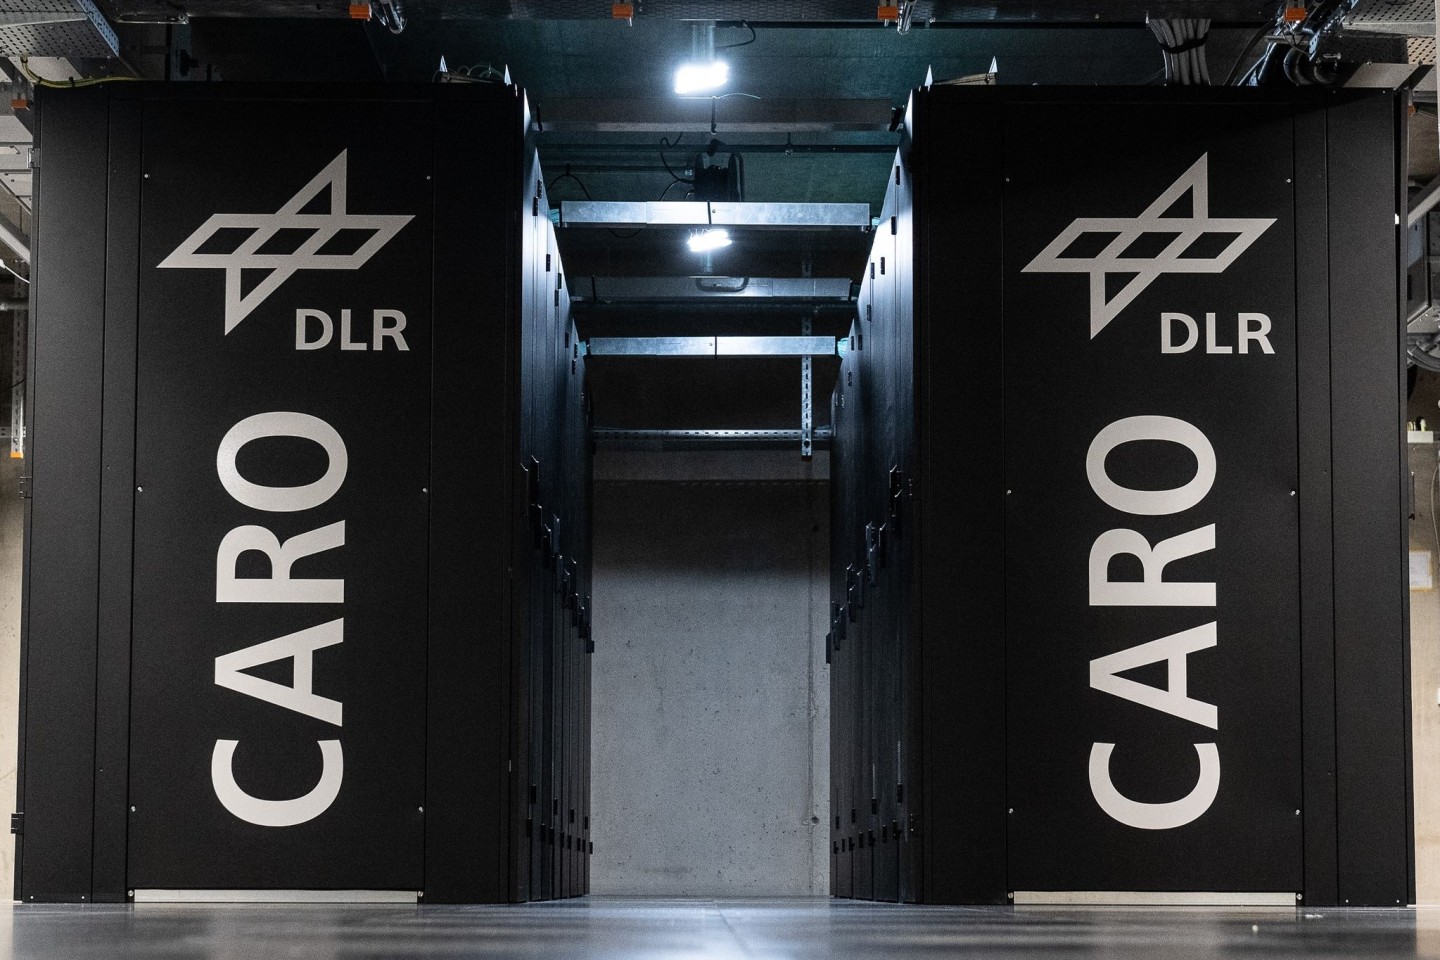 Blick auf den Supercomputer CARO des Deutschen Zentrums für Luft- und Raumfahrt (DLR). Das Computersystem soll unter anderem für die numerische Simulation künftiger Flugzeuge oder Windkra...